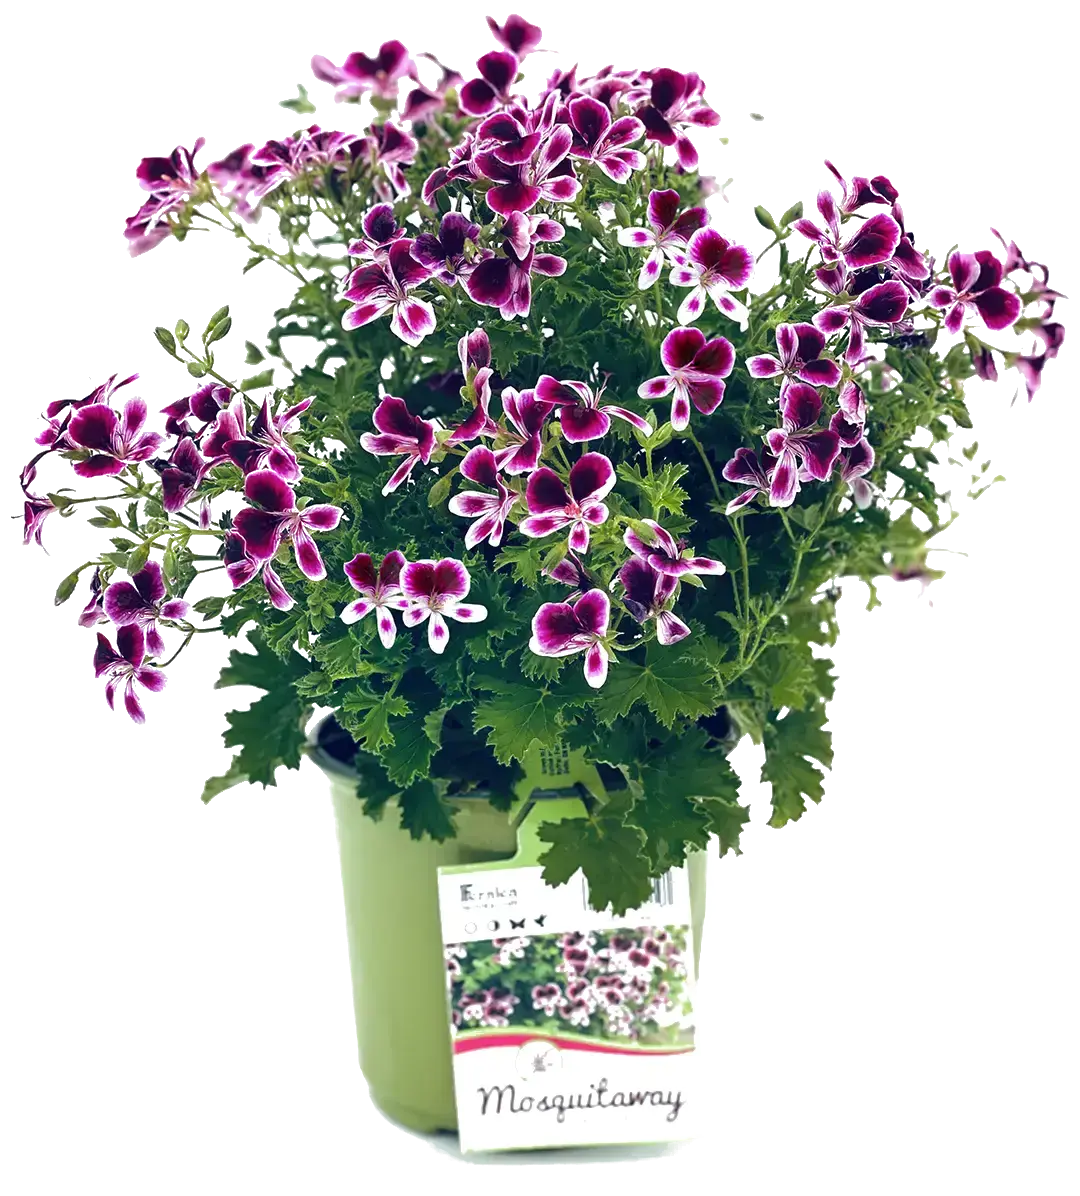 purple mosquitaway flower bushel in a small green pot